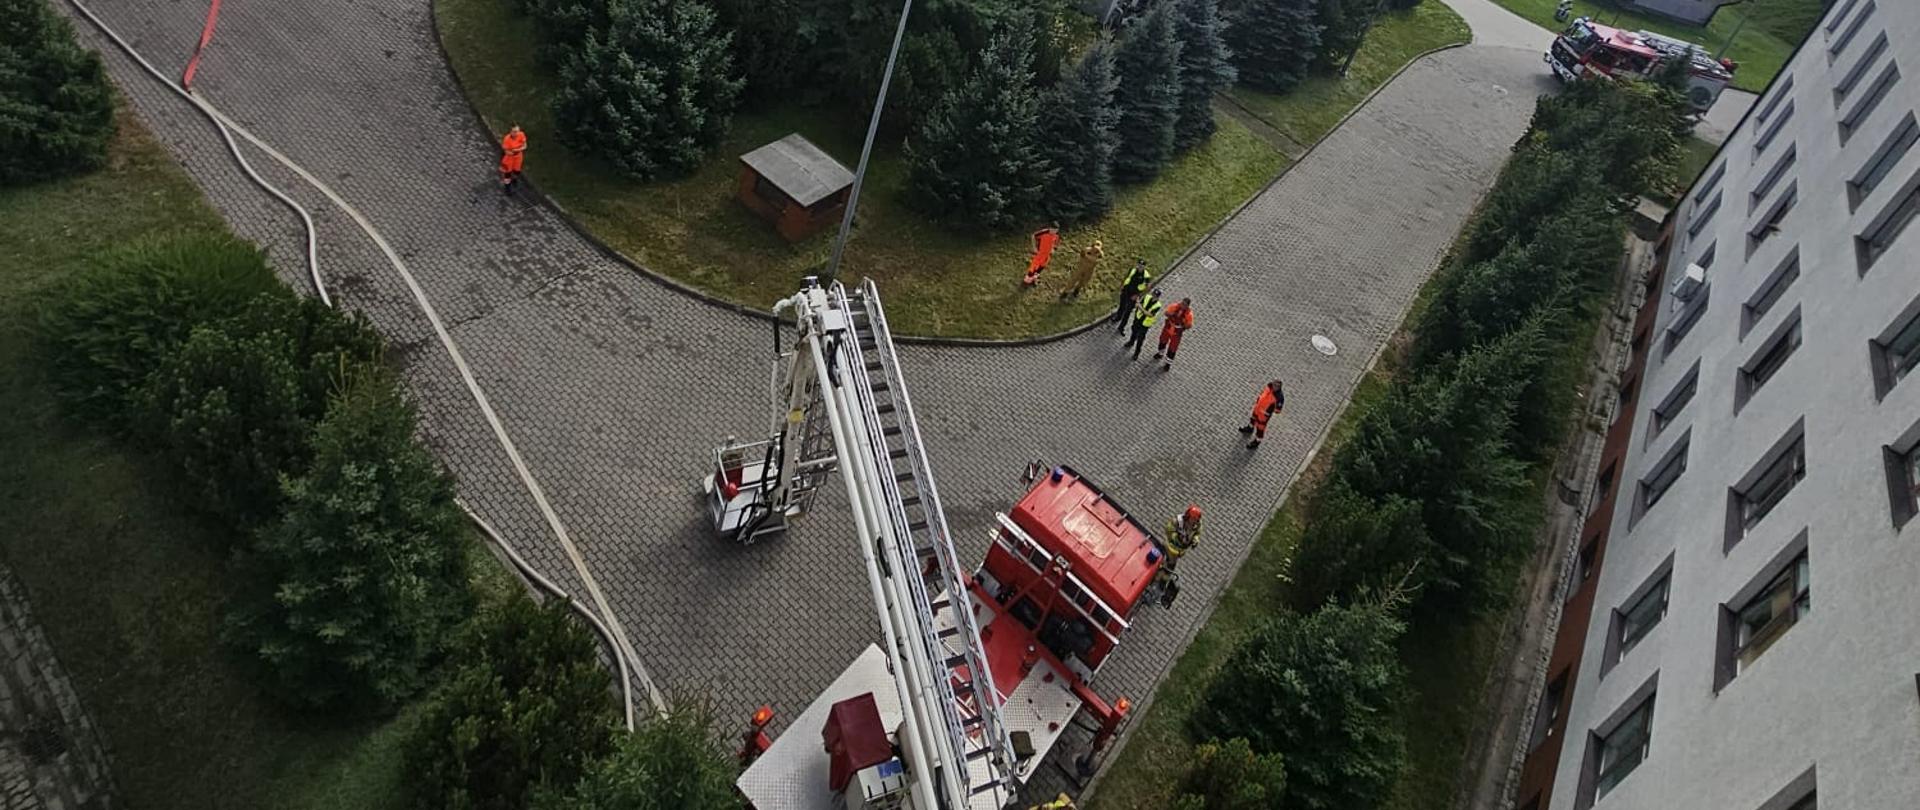 Zdjęcie przedstawia widok z góry na plac przed szpitalem, w centrum widać samochód specjalny podnośnik z drabiną, oraz ćwiczących strażaków po prawej i po lewej stronie widoczne samochody strażackie.